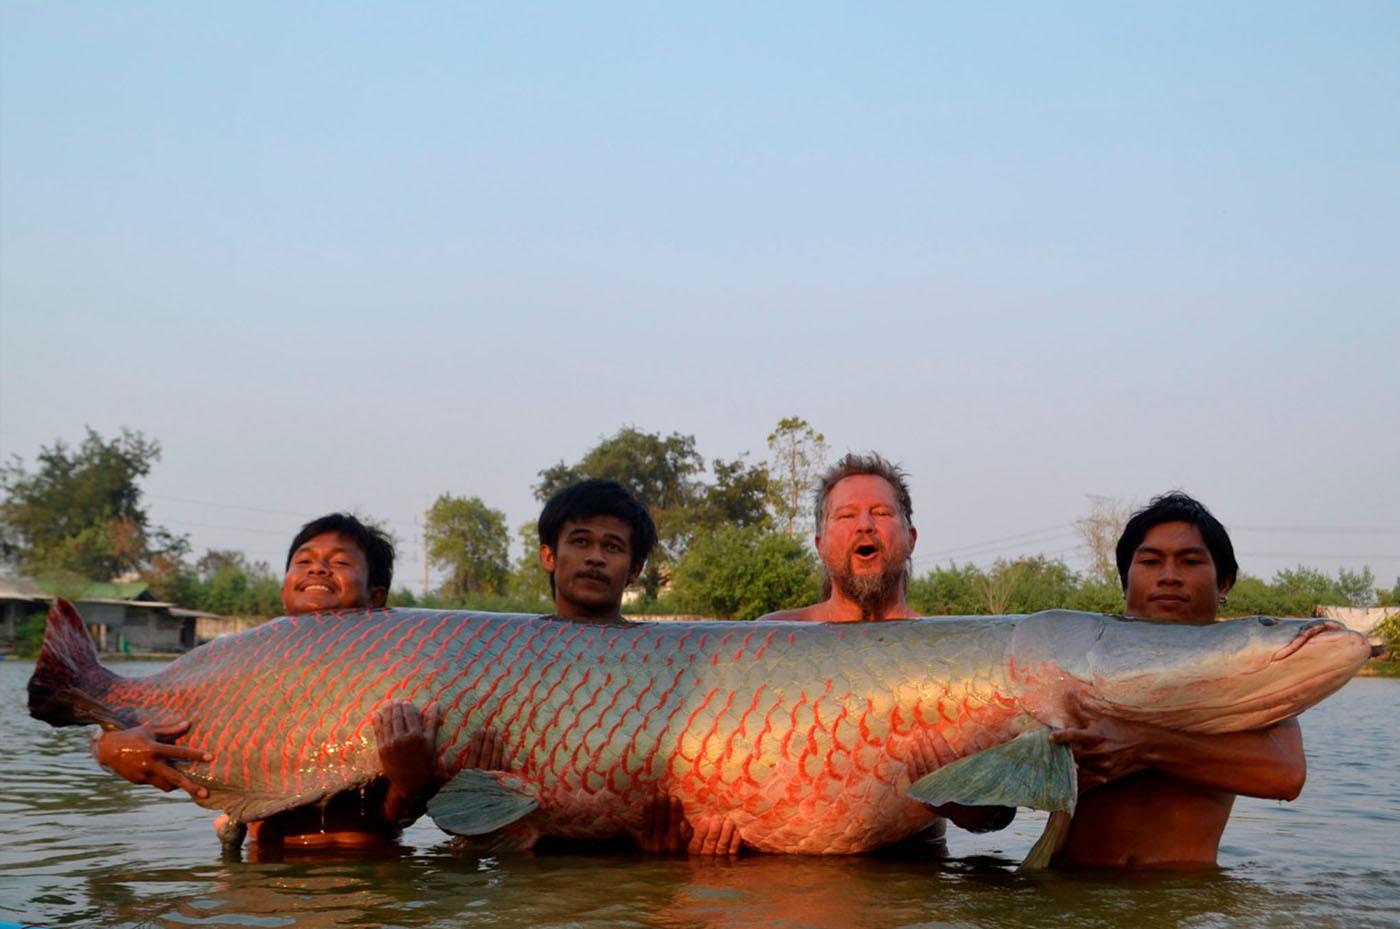 Арапайма (пираруку) - фото и описание рыбы, характеристики, размеры, как выглядит самая большая рыба амазонки